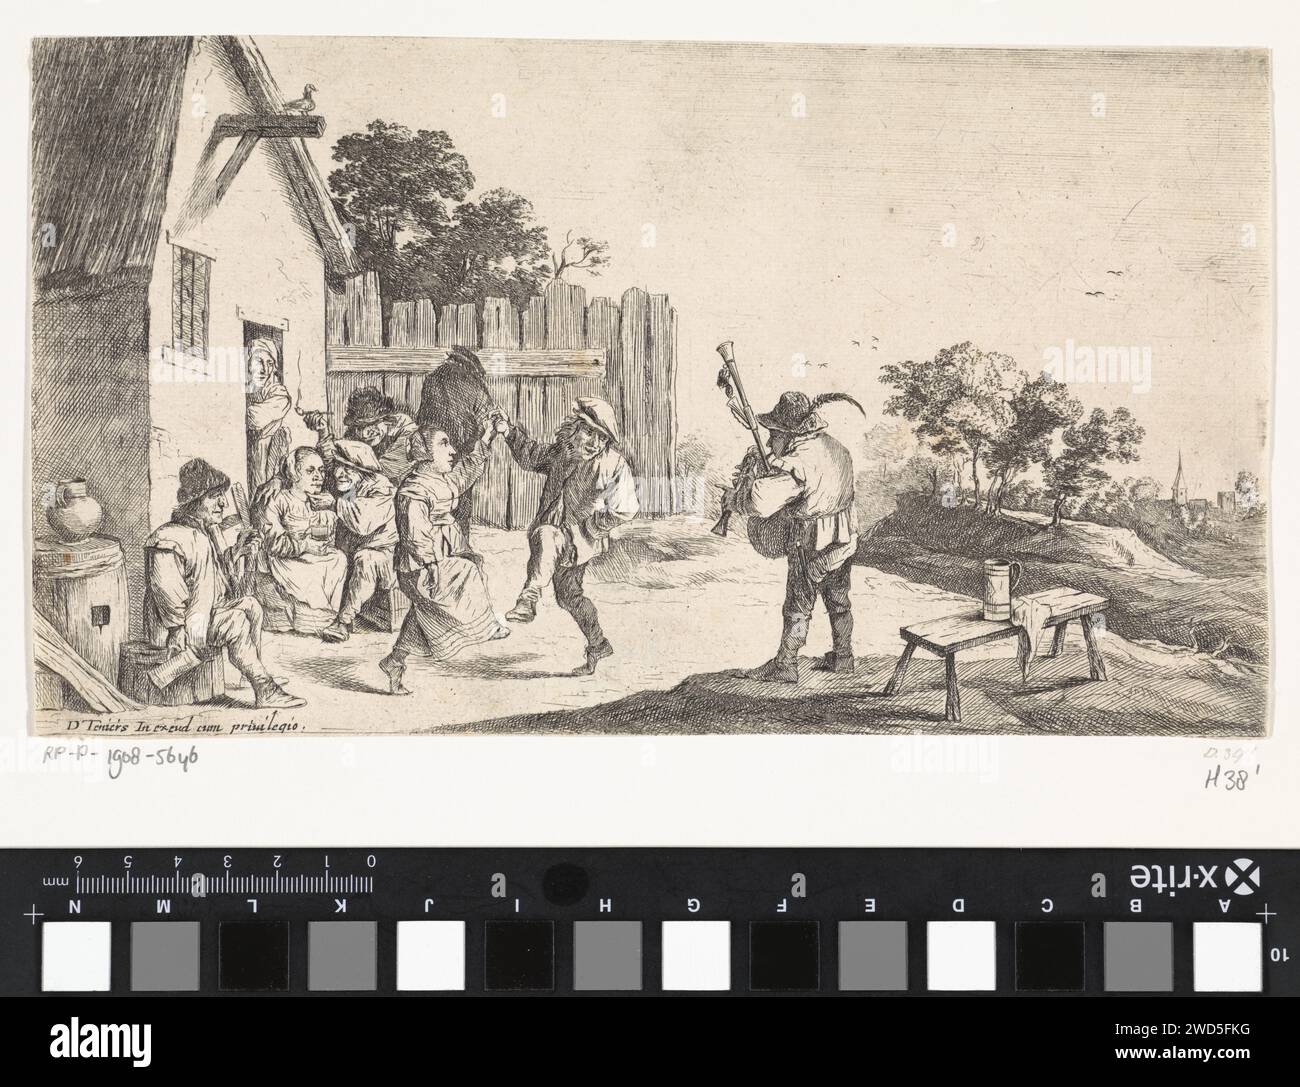 Dance for the inn, Anonym, nach David Teniers (II), 1626 - 1690 Drucken Sie einige Tänze für ein gasthaus zur Musik eines Dudelsackspielers. Die trinkenden Bauern sind vor dem gasthaus. Antwerpener Papierätzer inn, Kaffeehaus, Gasthaus, etc. Ein Paar tanzt, Mann und Frau tanzt als Paar. Dudelsack, Musette - CC - draußen Stockfoto